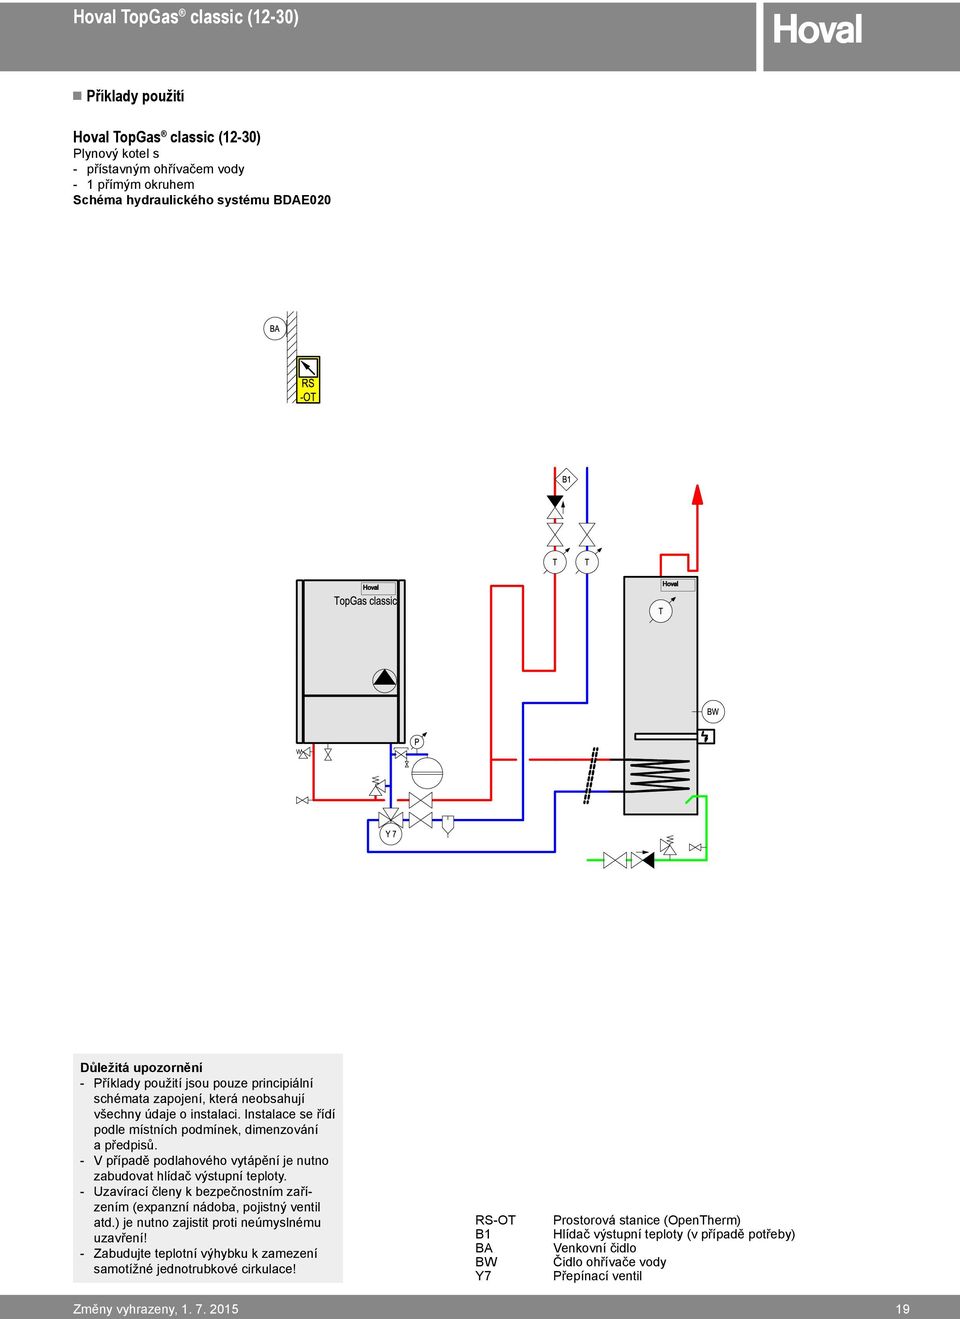 V případě podlahového vytápění je nutno zabudovat hlídač výstupní teploty. Uzavírací členy k bezpečnostním zařízením (expanzní nádoba, pojistný ventil atd.